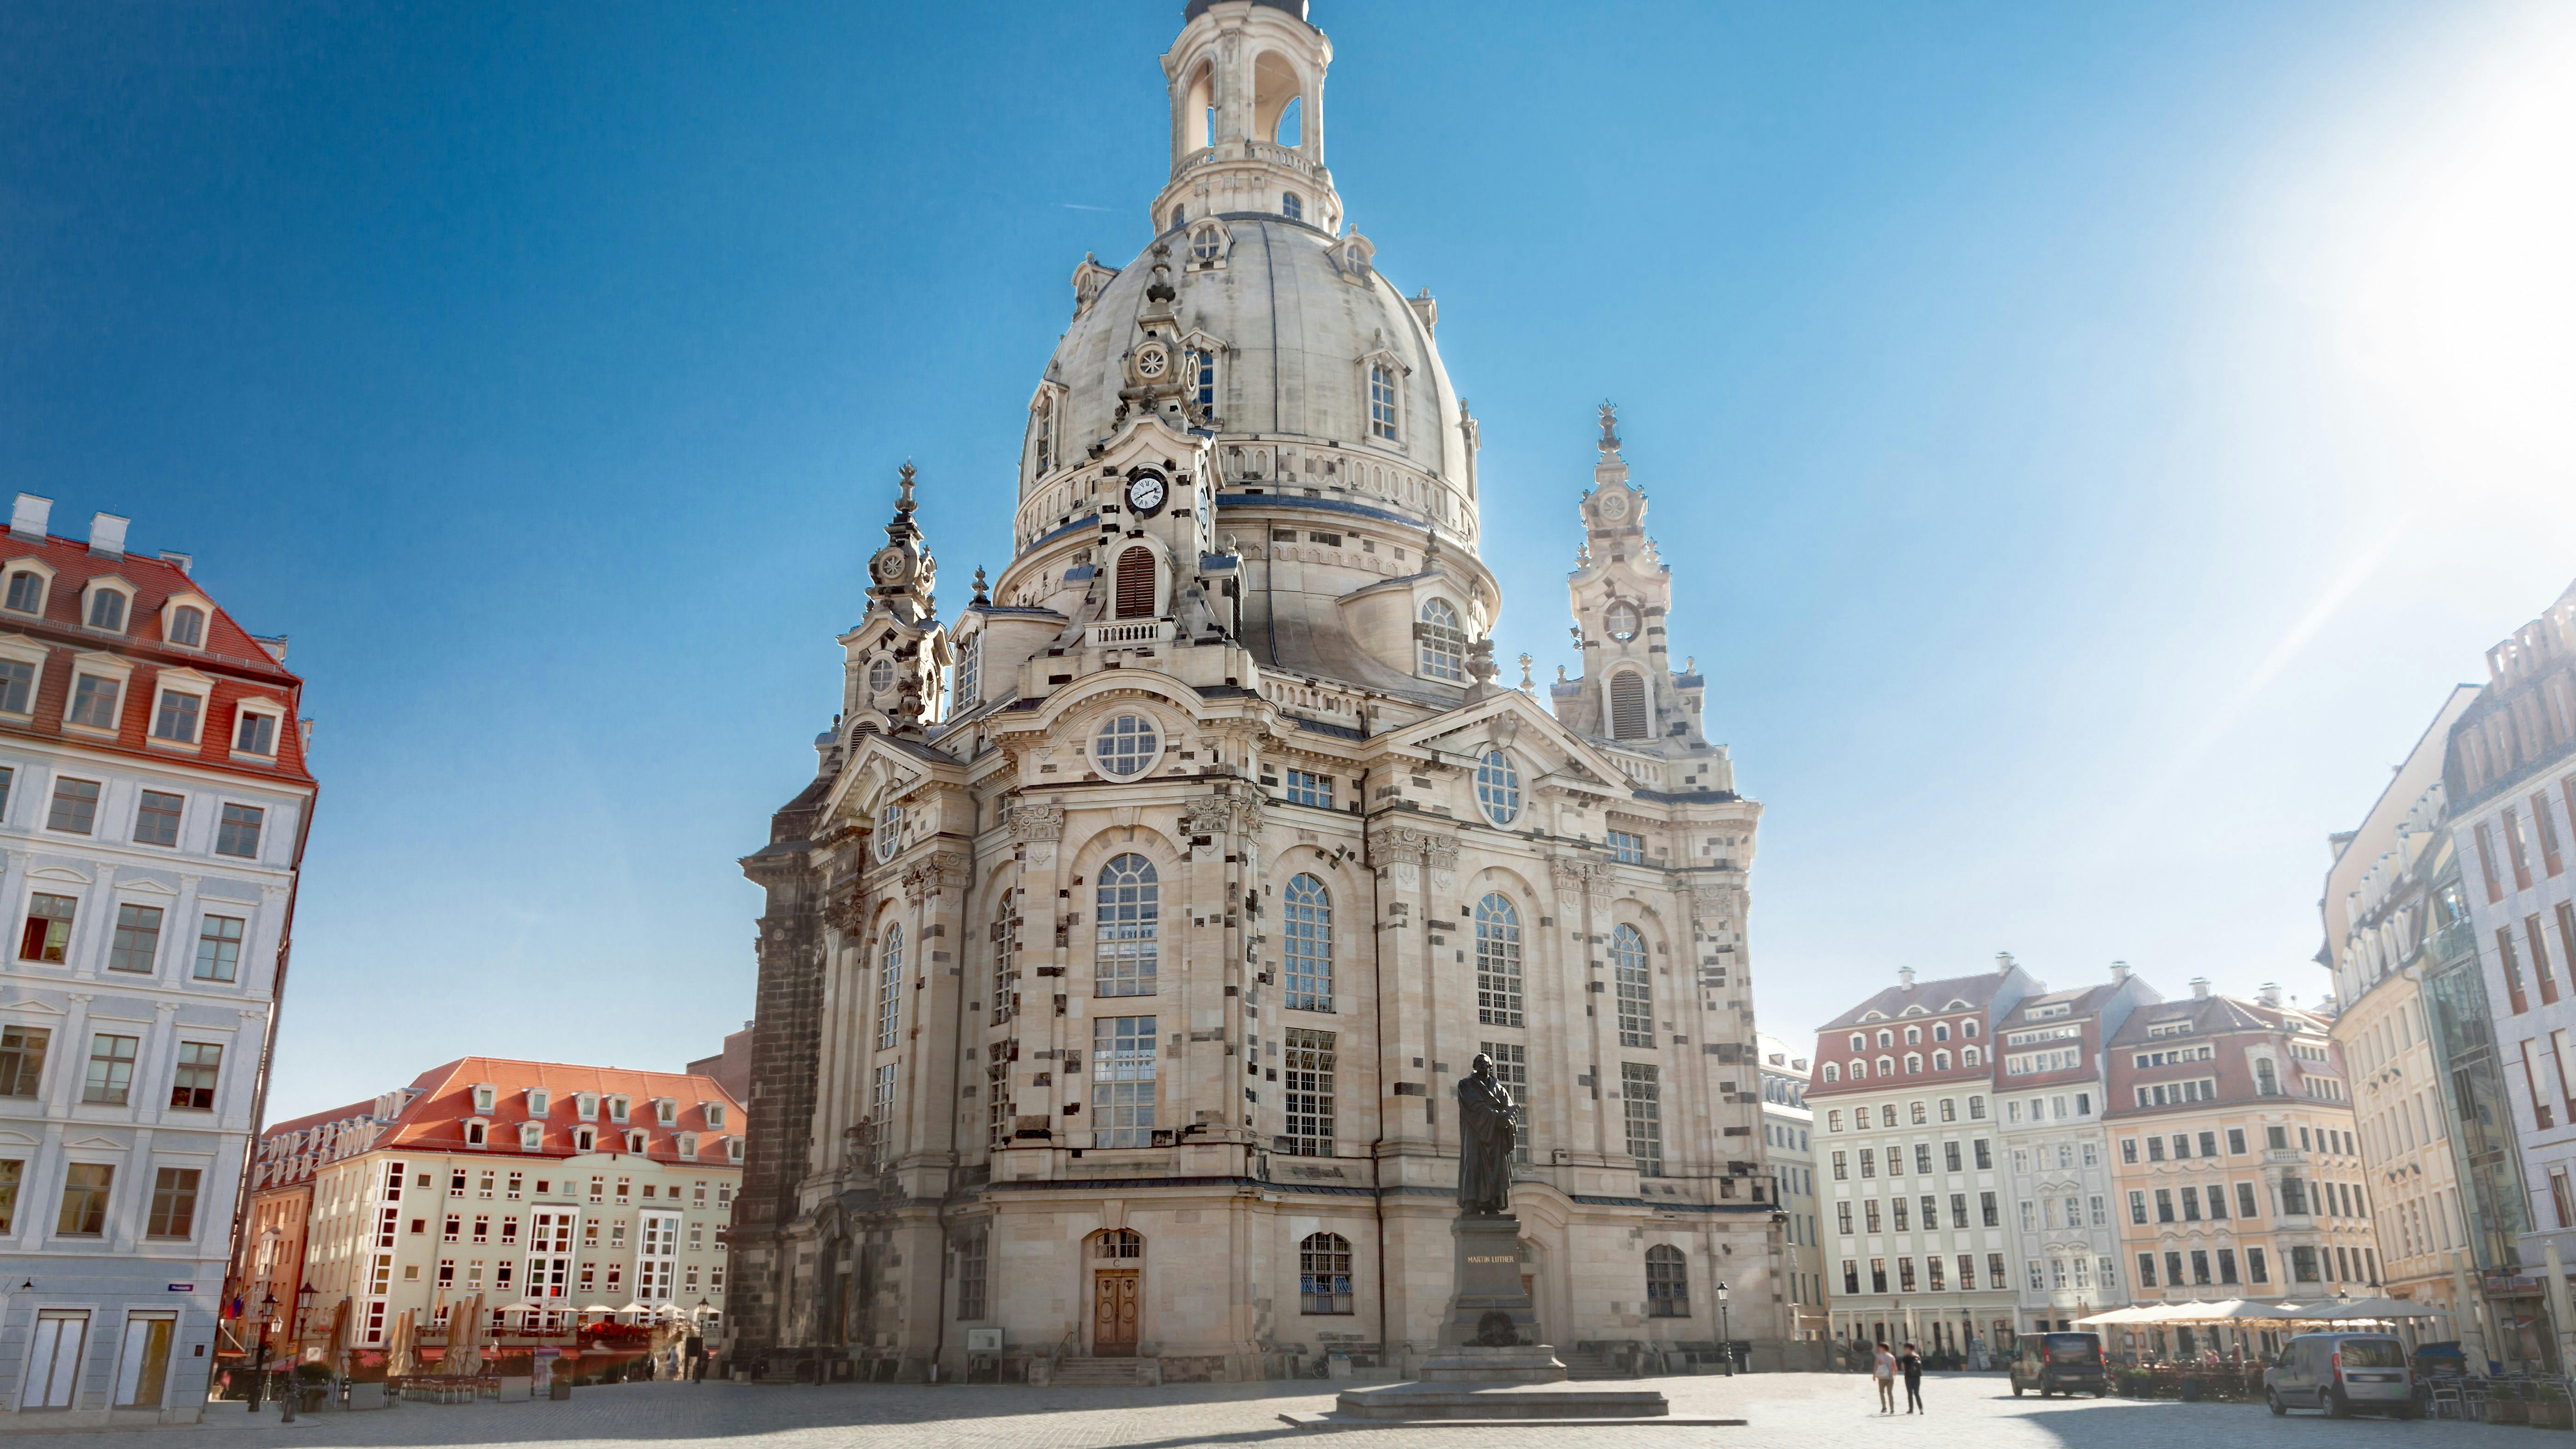 Stadtführung Dresden mit Innenbesichtigung der Frauenkirche und Zwingerrundgang